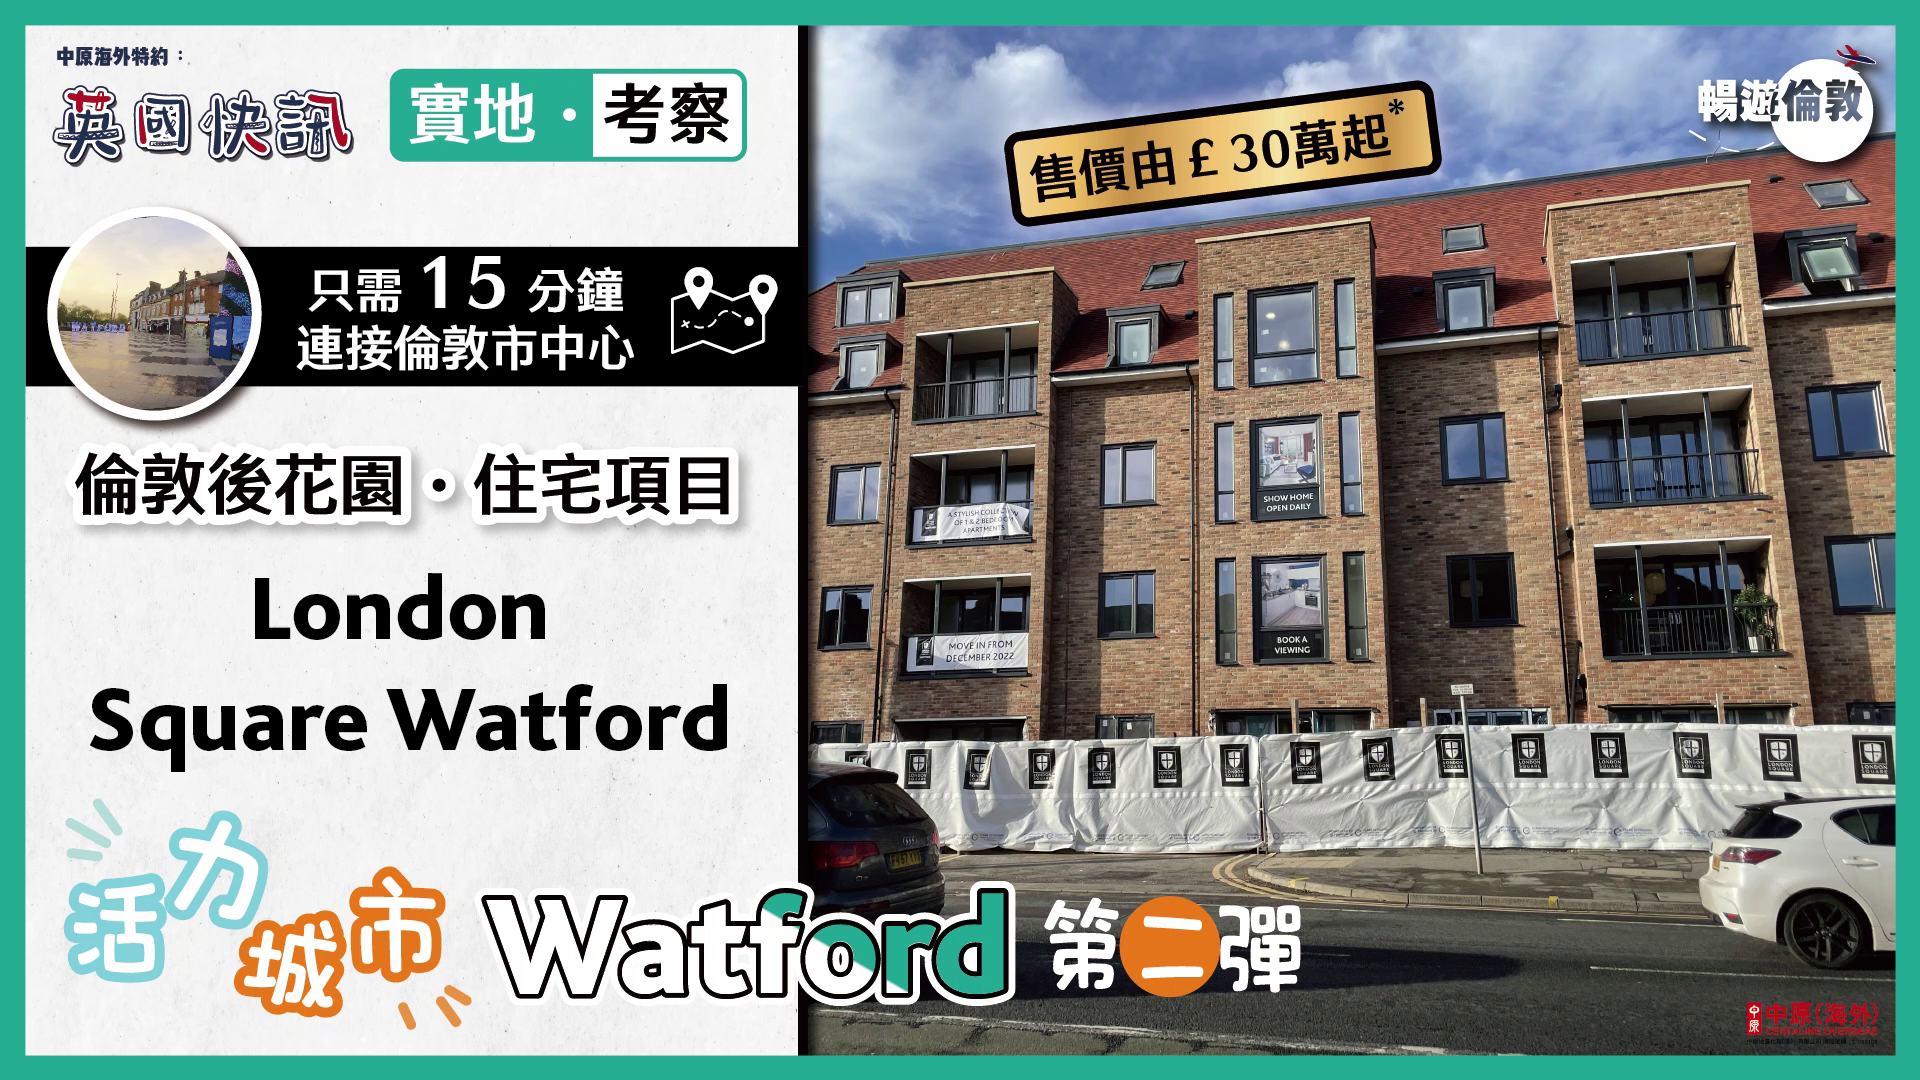 海外尋寶 英國篇 Watford 中原地產代理 (海外)